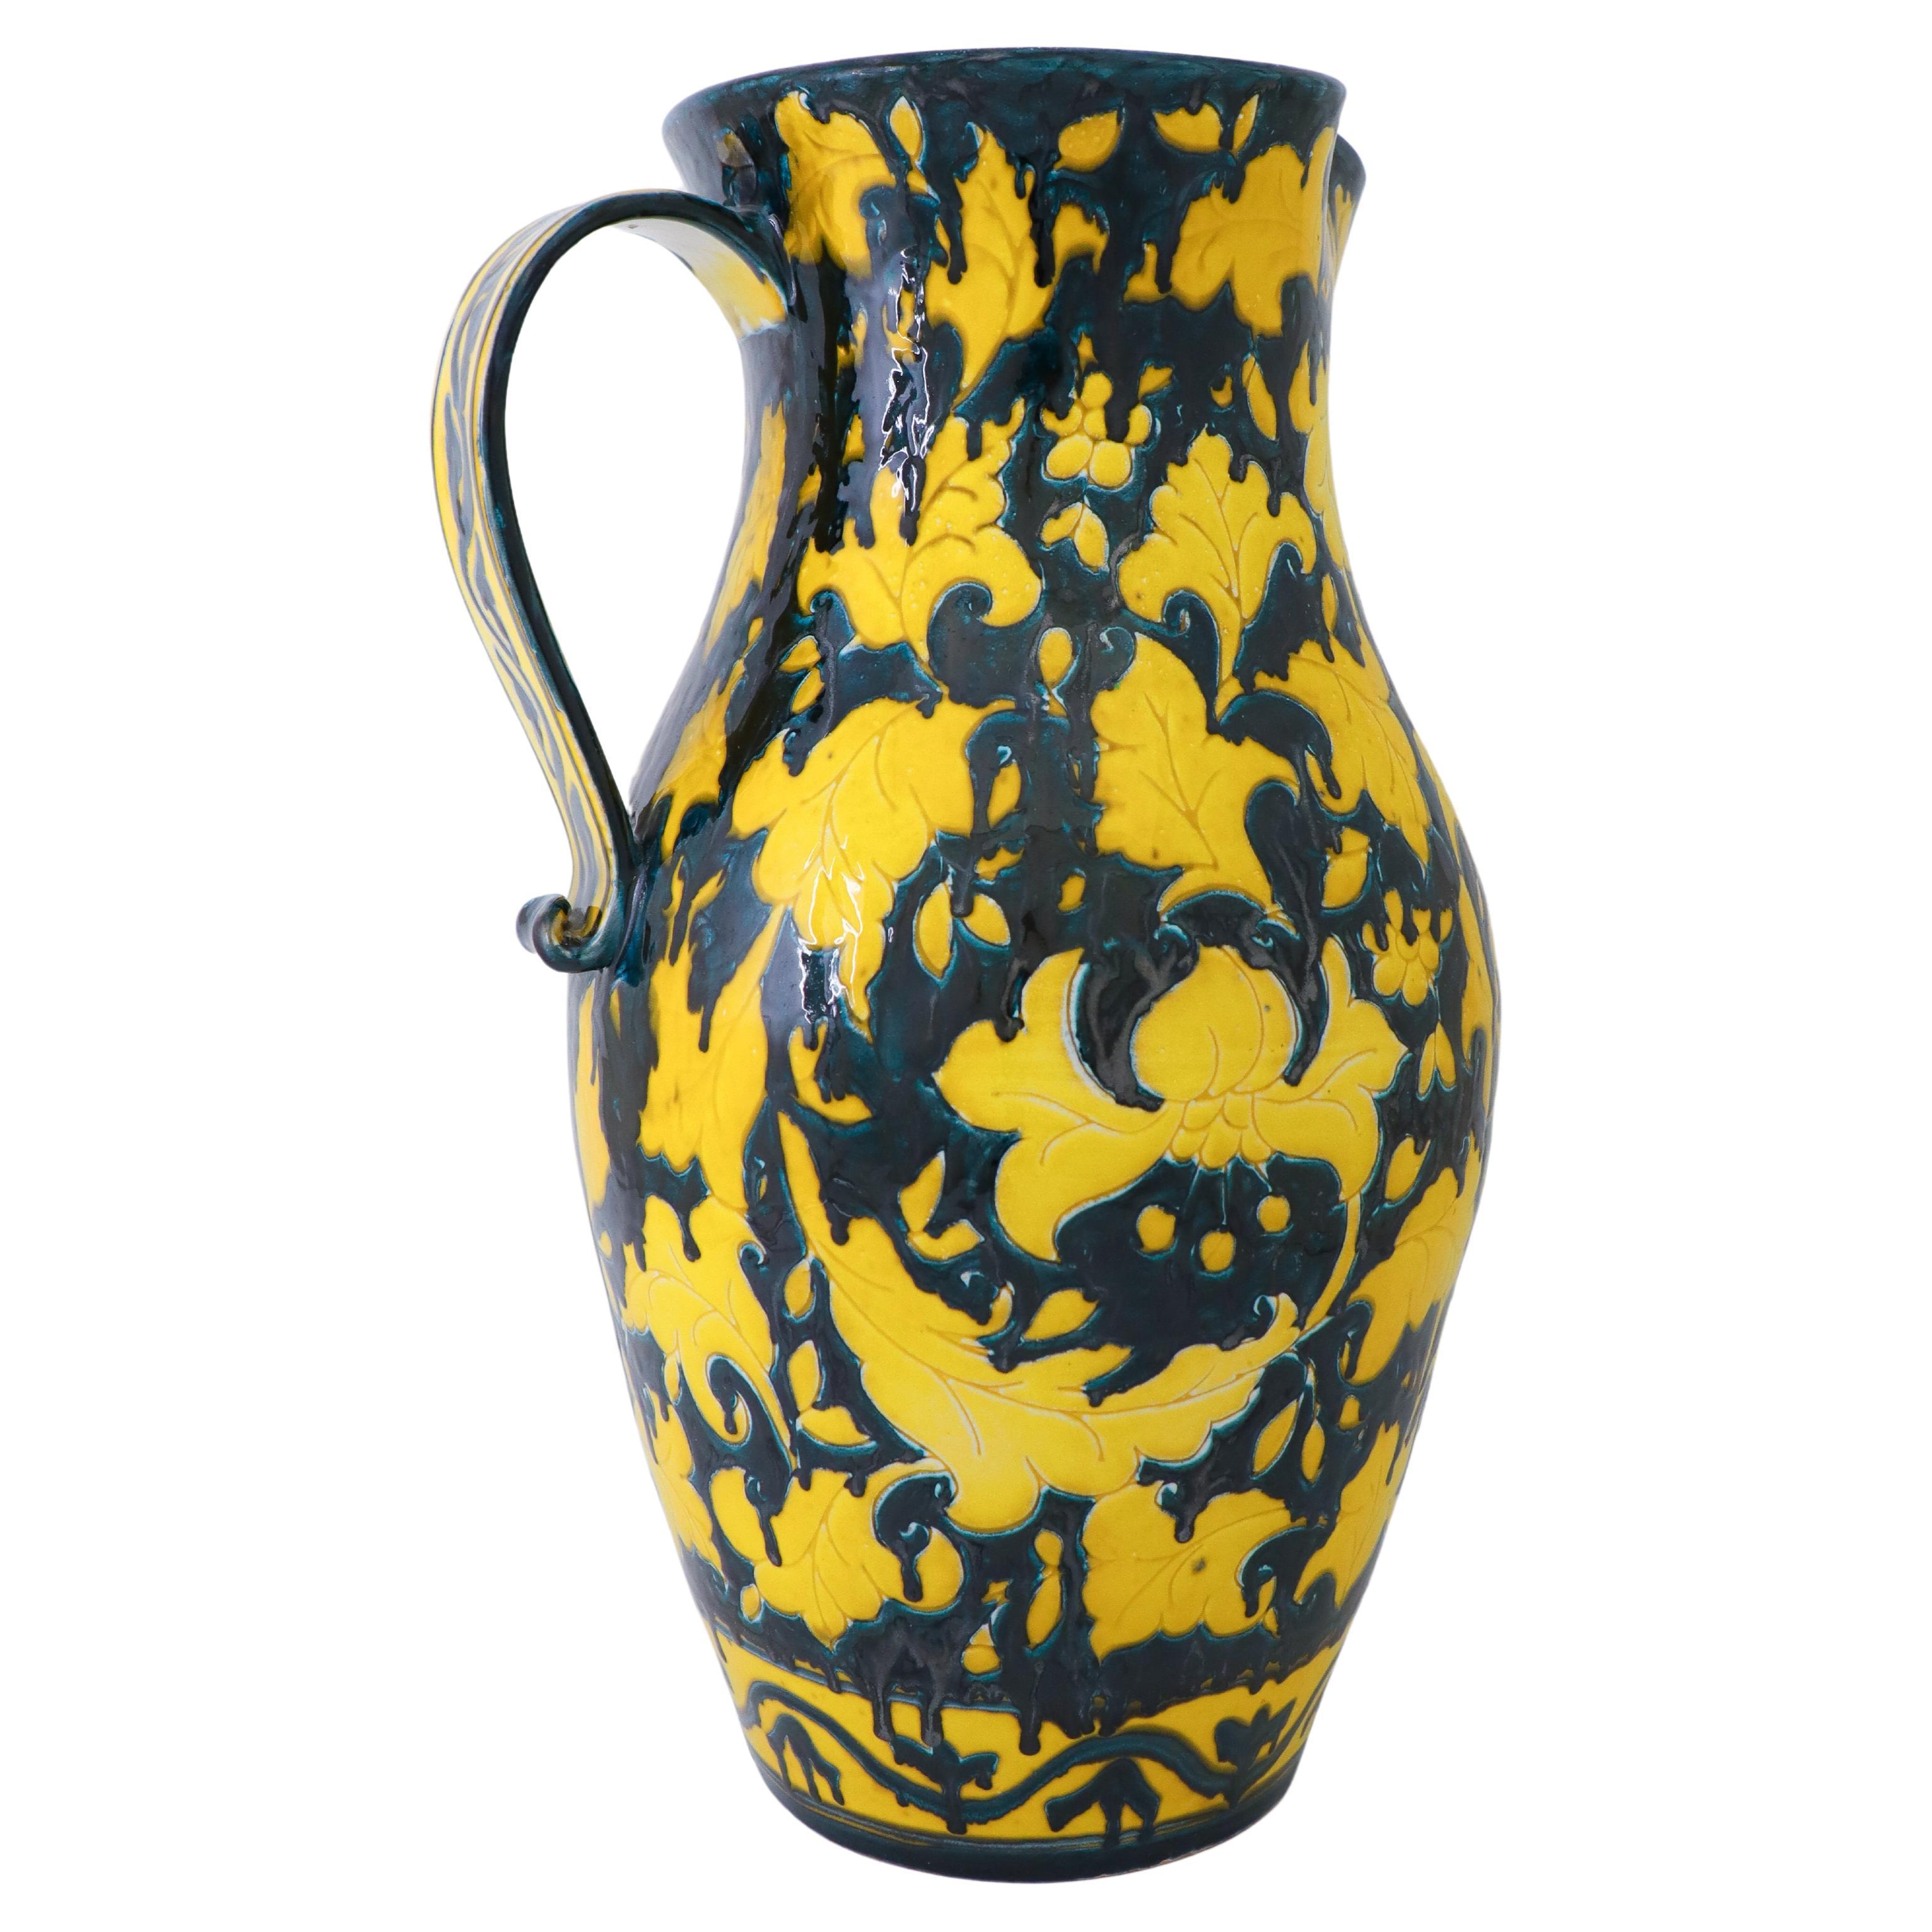 Großer erstaunlicher gelber Bodentopf/Krug aus Keramik – Italien 